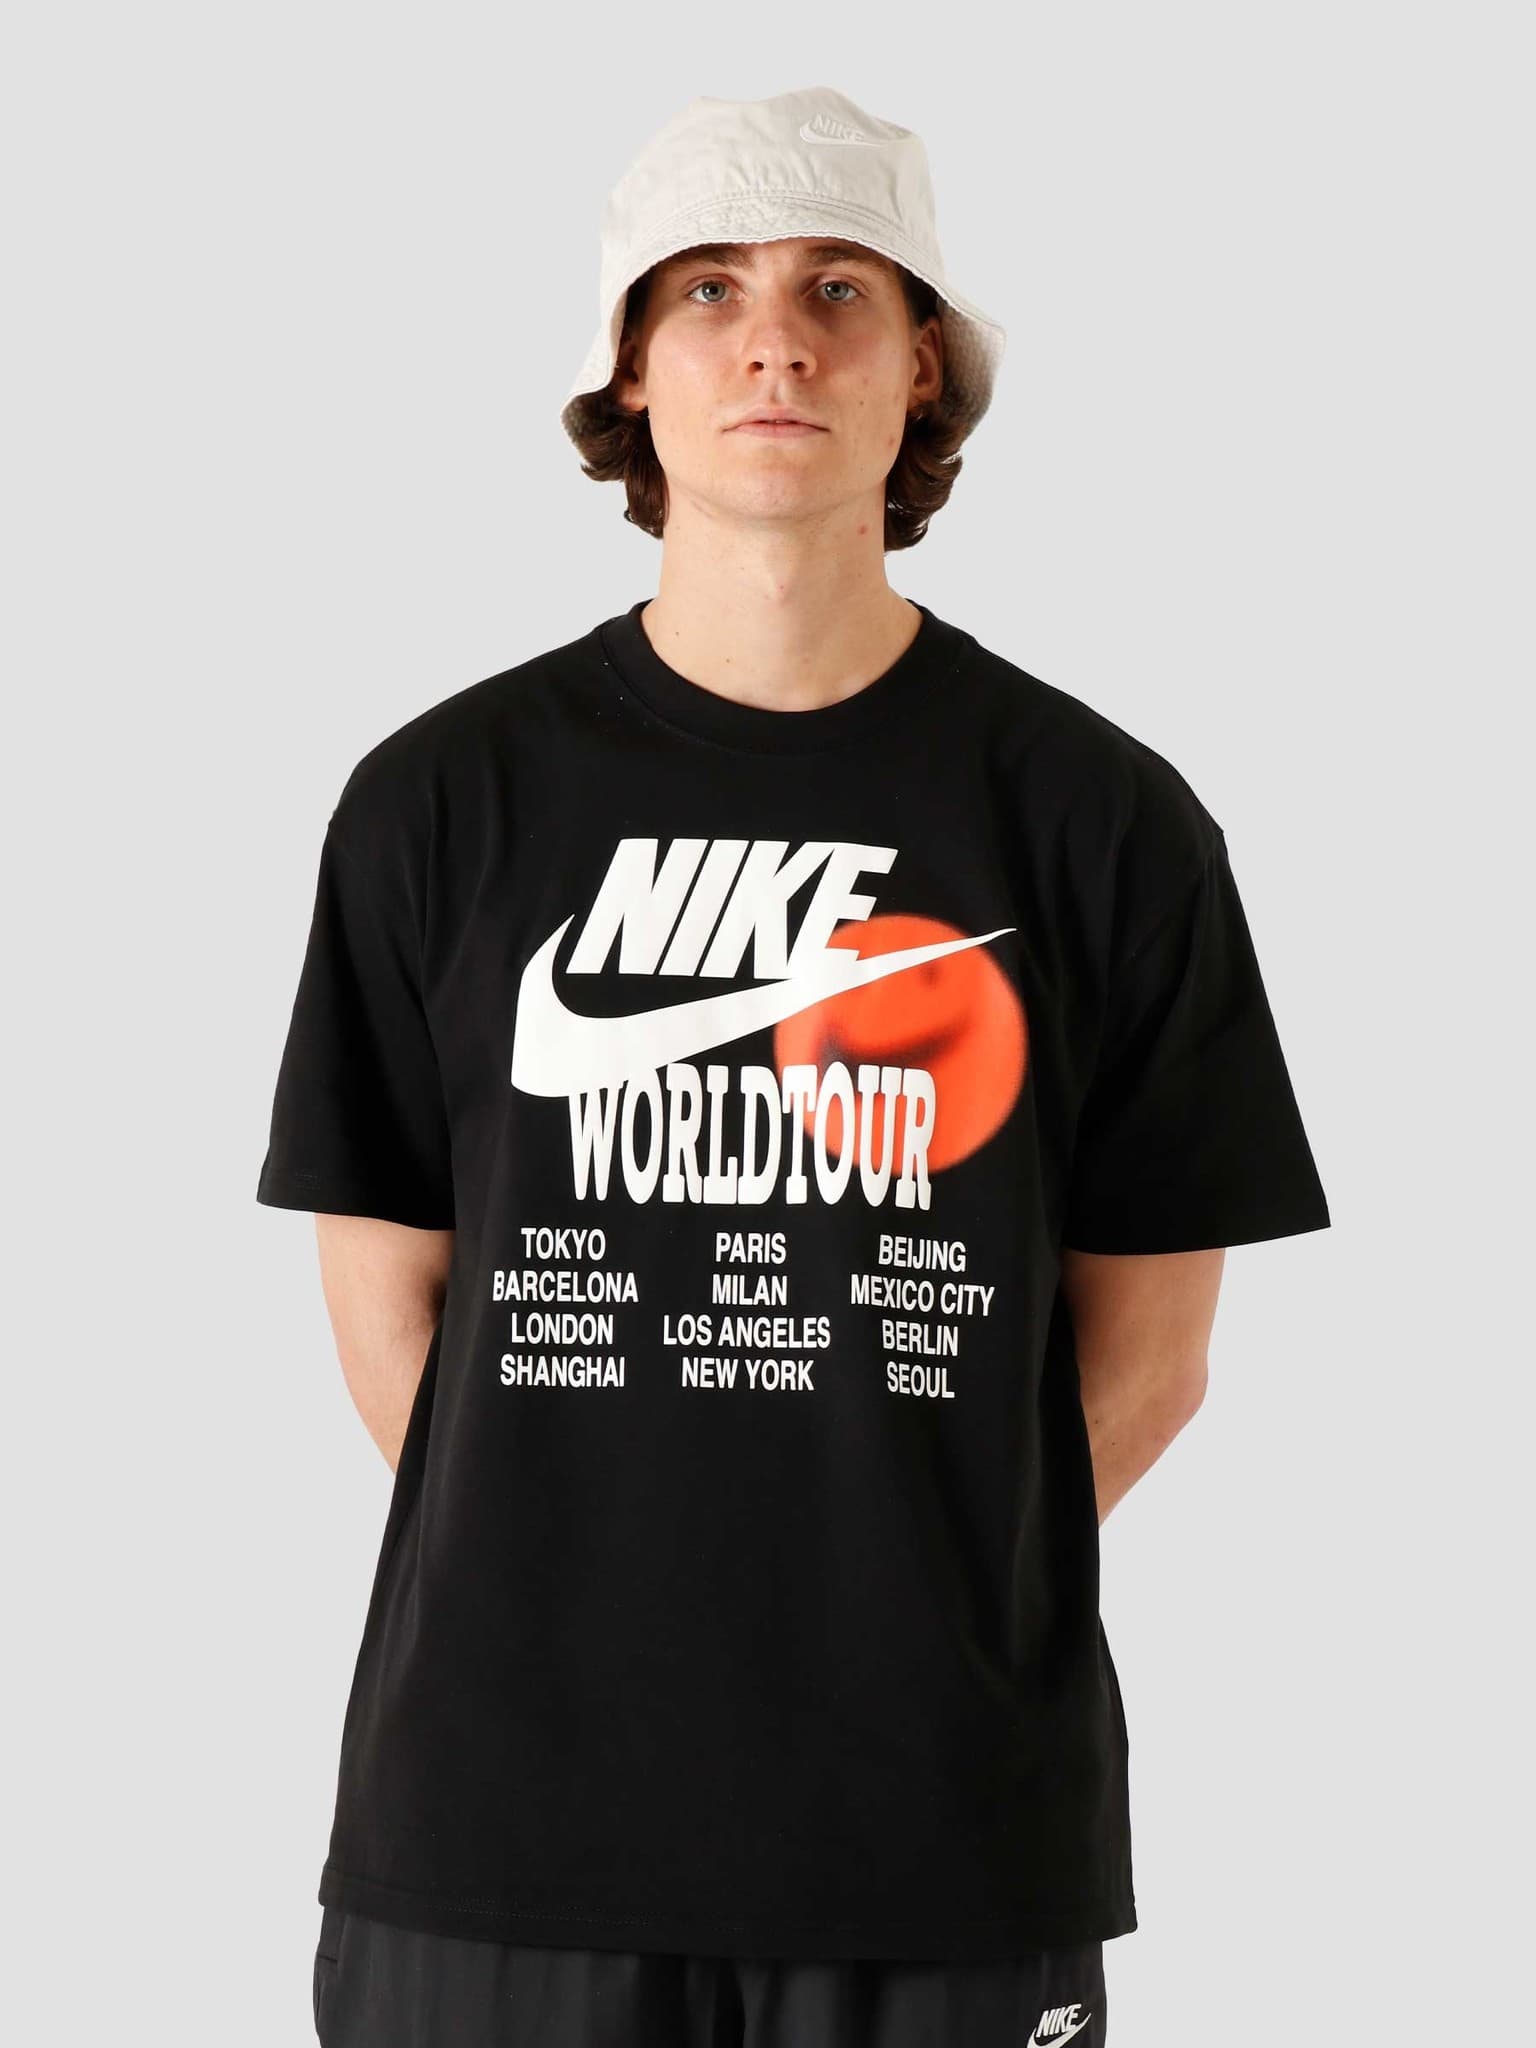 Nike NSW T-Shirt World Tour Black - Freshcotton